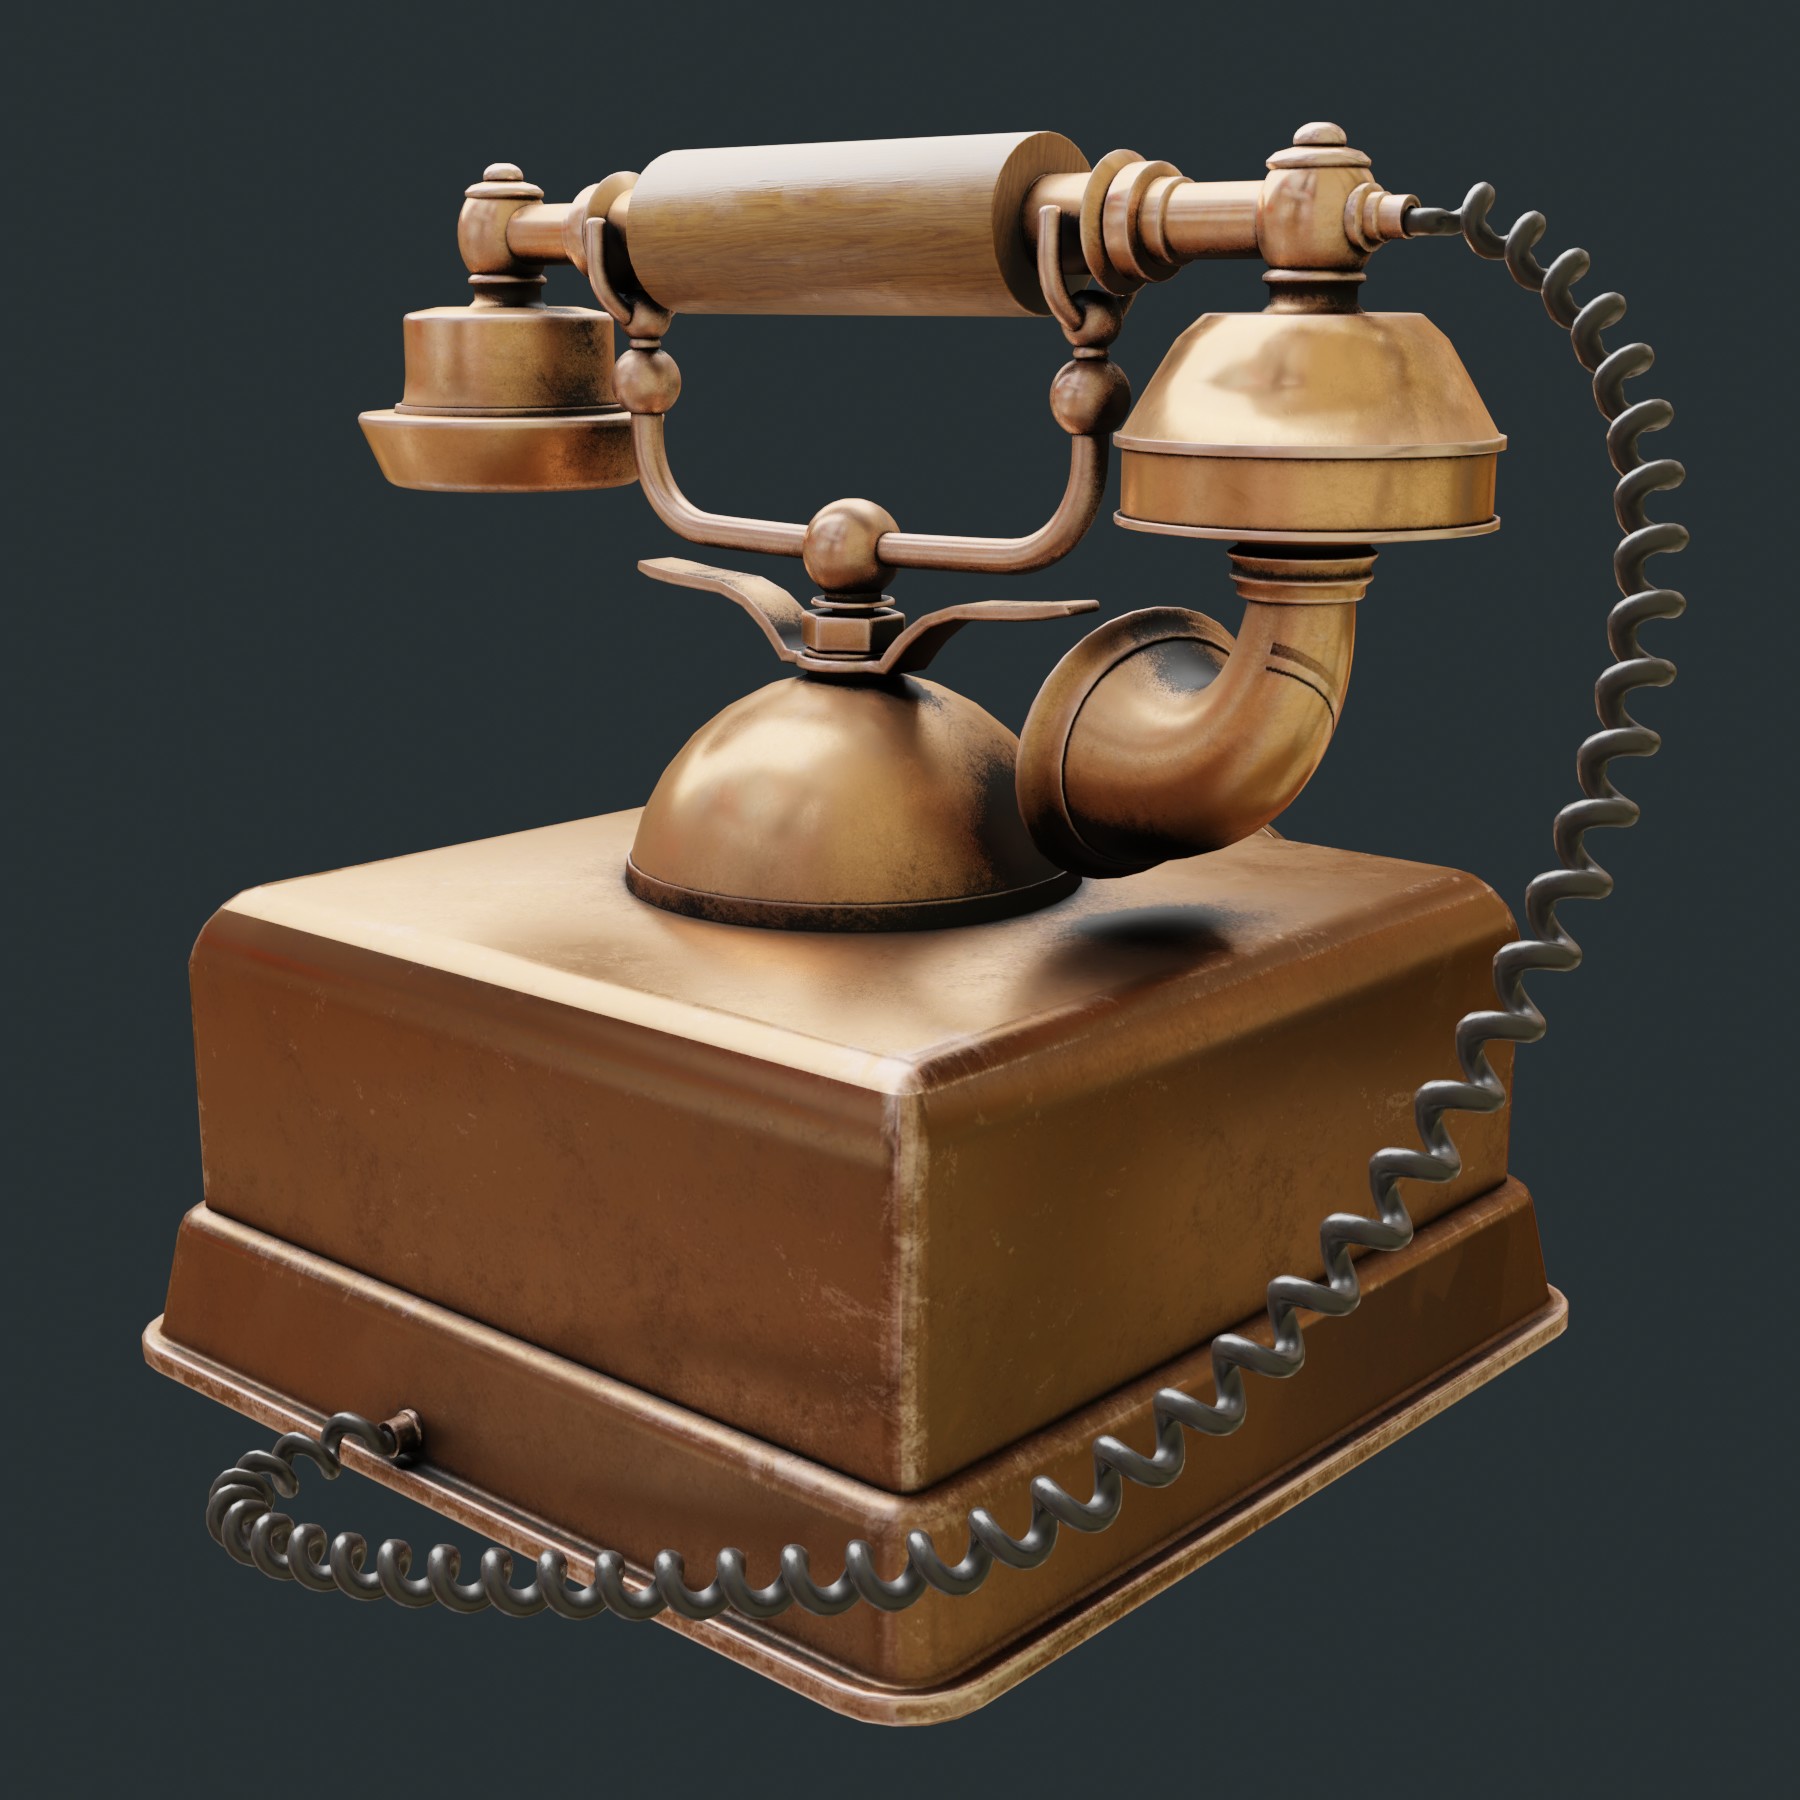 Vintage telephone in Blender cycles render image